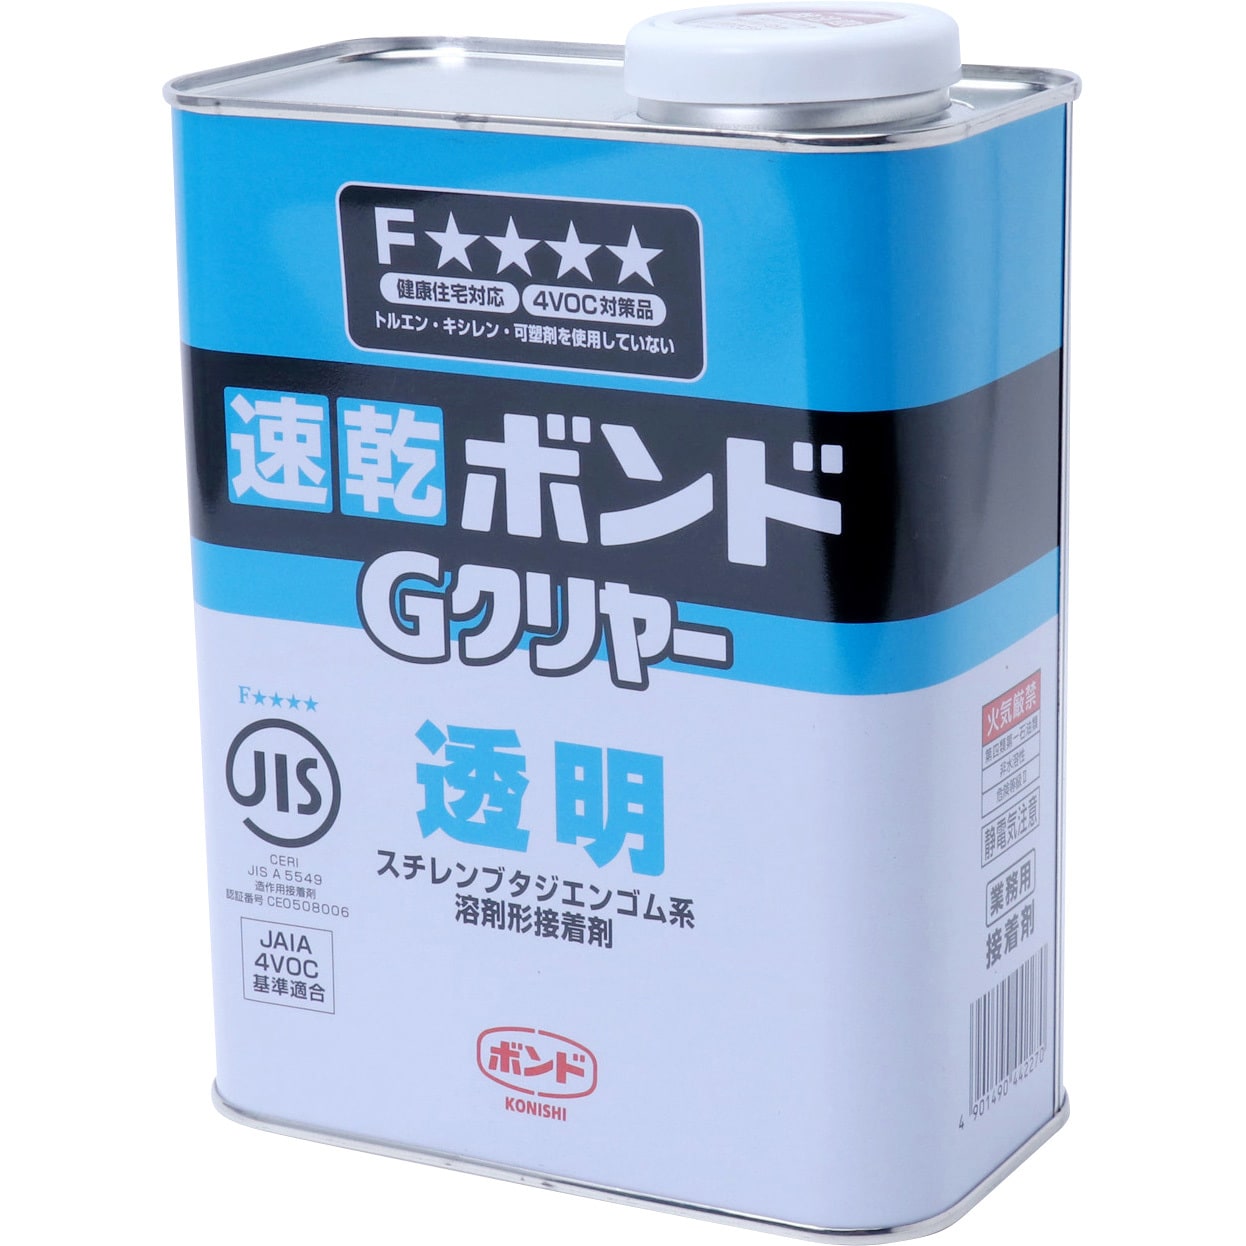 コニシ K10 1kg ケース6缶入り - 1